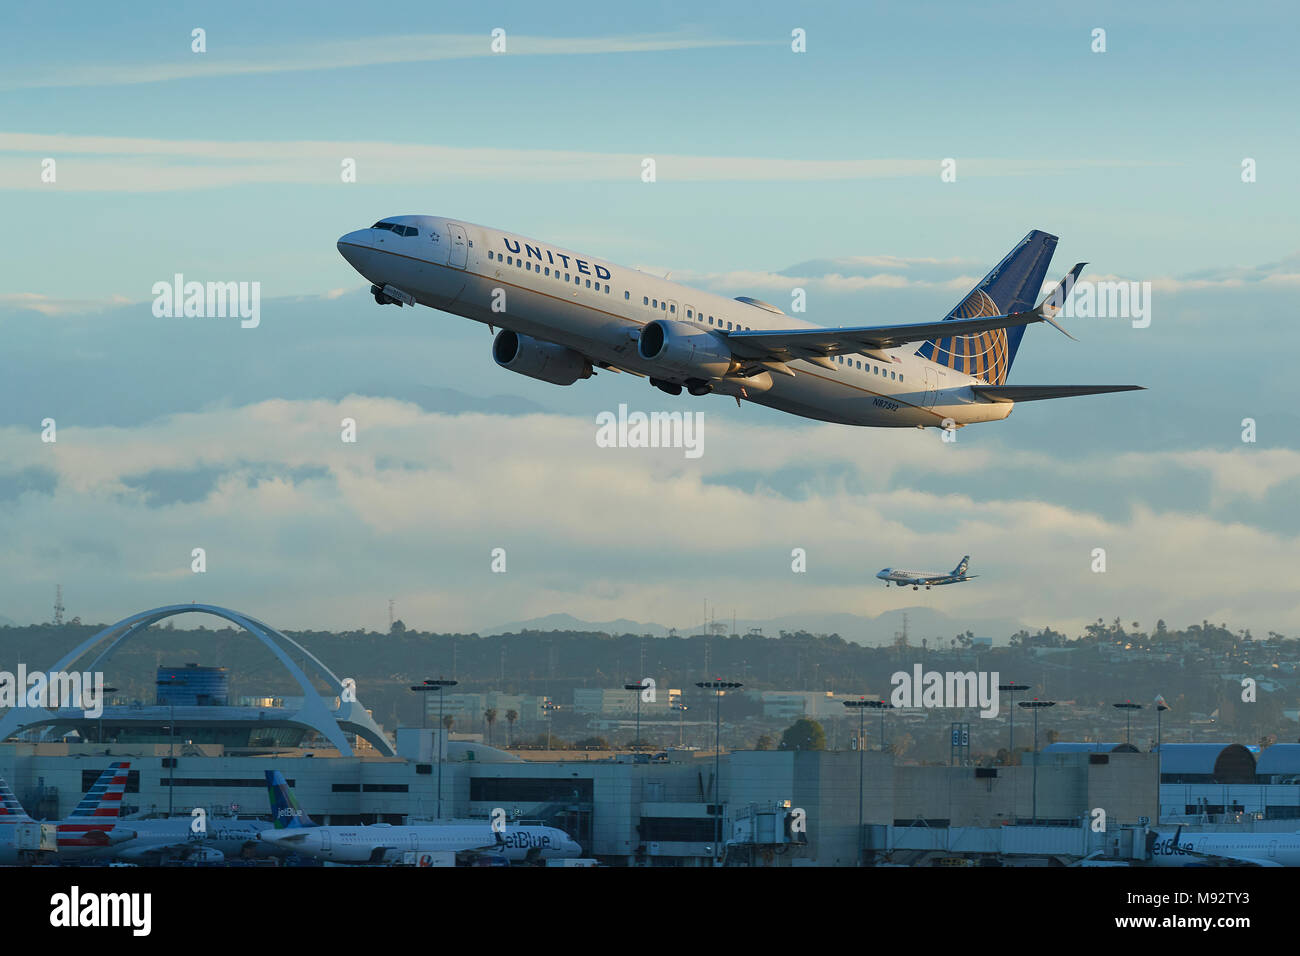 United Airlines Boeing 737-900 Avion de ligne au décollage de l'Aéroport International de Los Angeles, LAX. Le thème des capacités et un plan d'atterrissage derrière. Banque D'Images